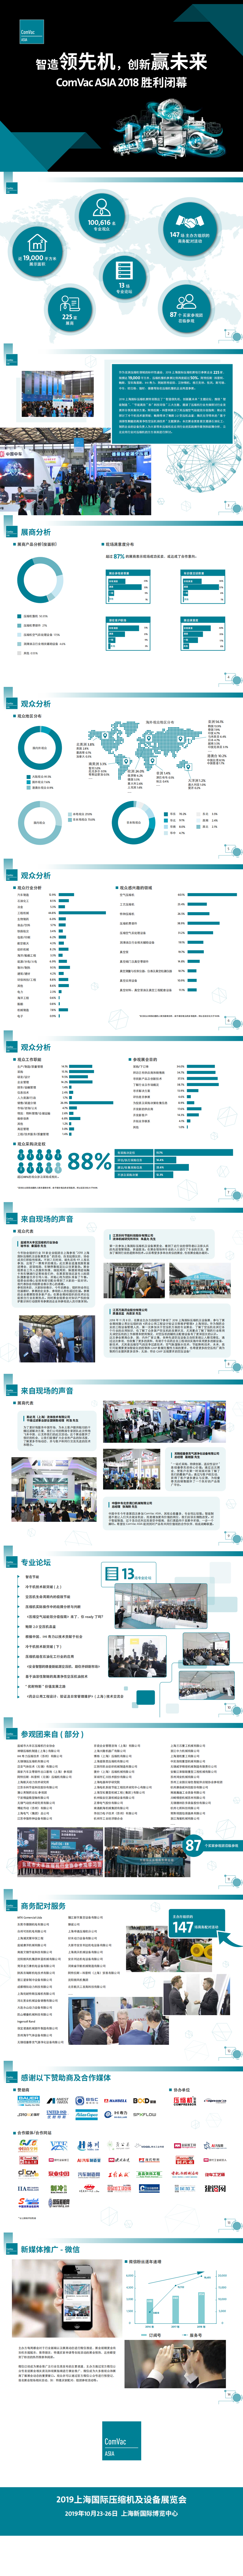 上海压缩机及设备展览会 ComVac Asia